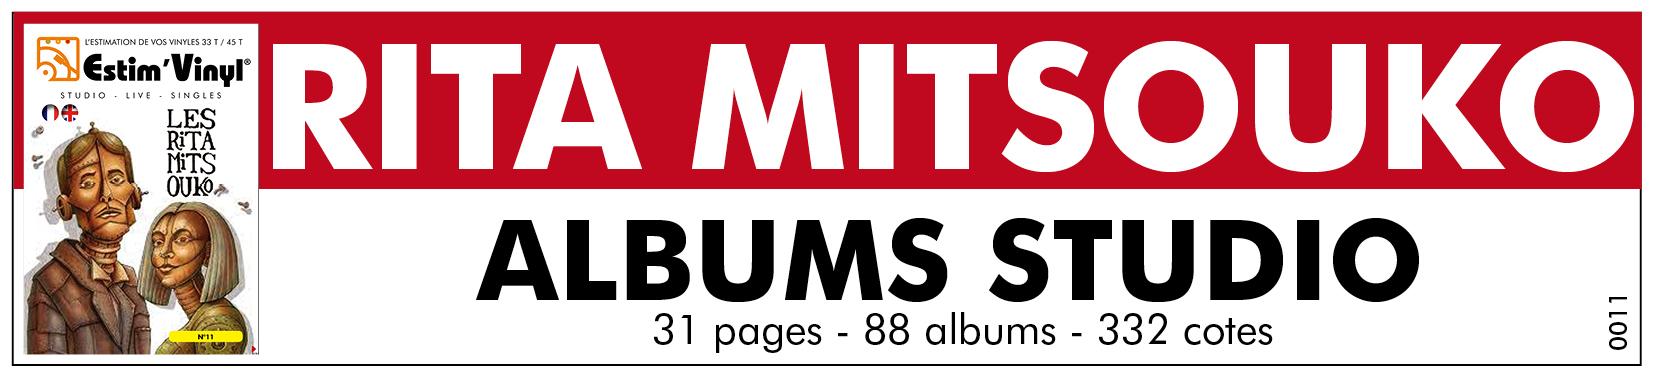 Retrouvez la valeur des vinyles 33 tours du Groupe Rita Mitsouko, www.estimvinyl.com